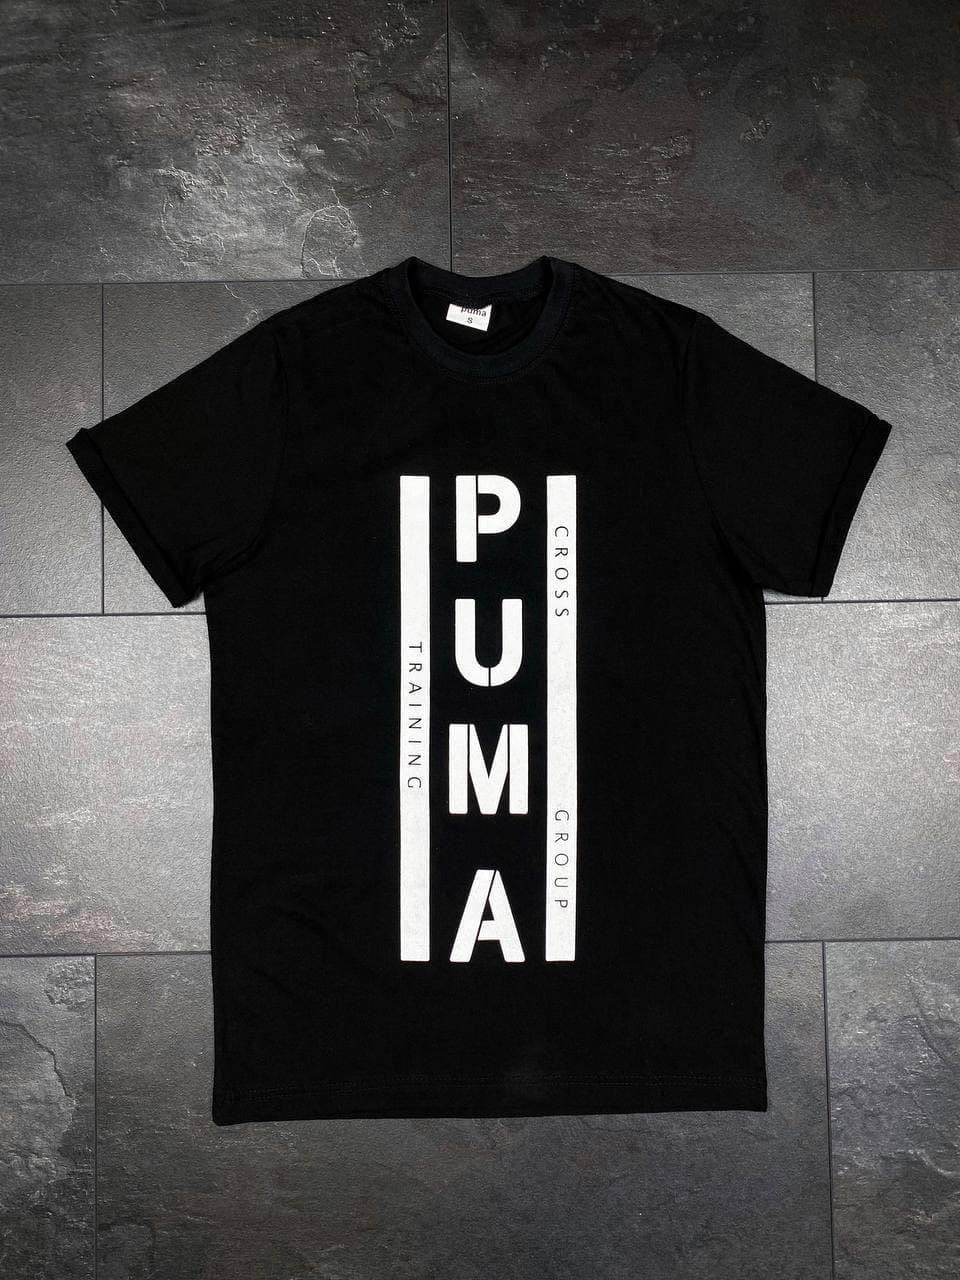 Чоловіча футболка Puma чорна, якісна молодіжна футболка на щодень.